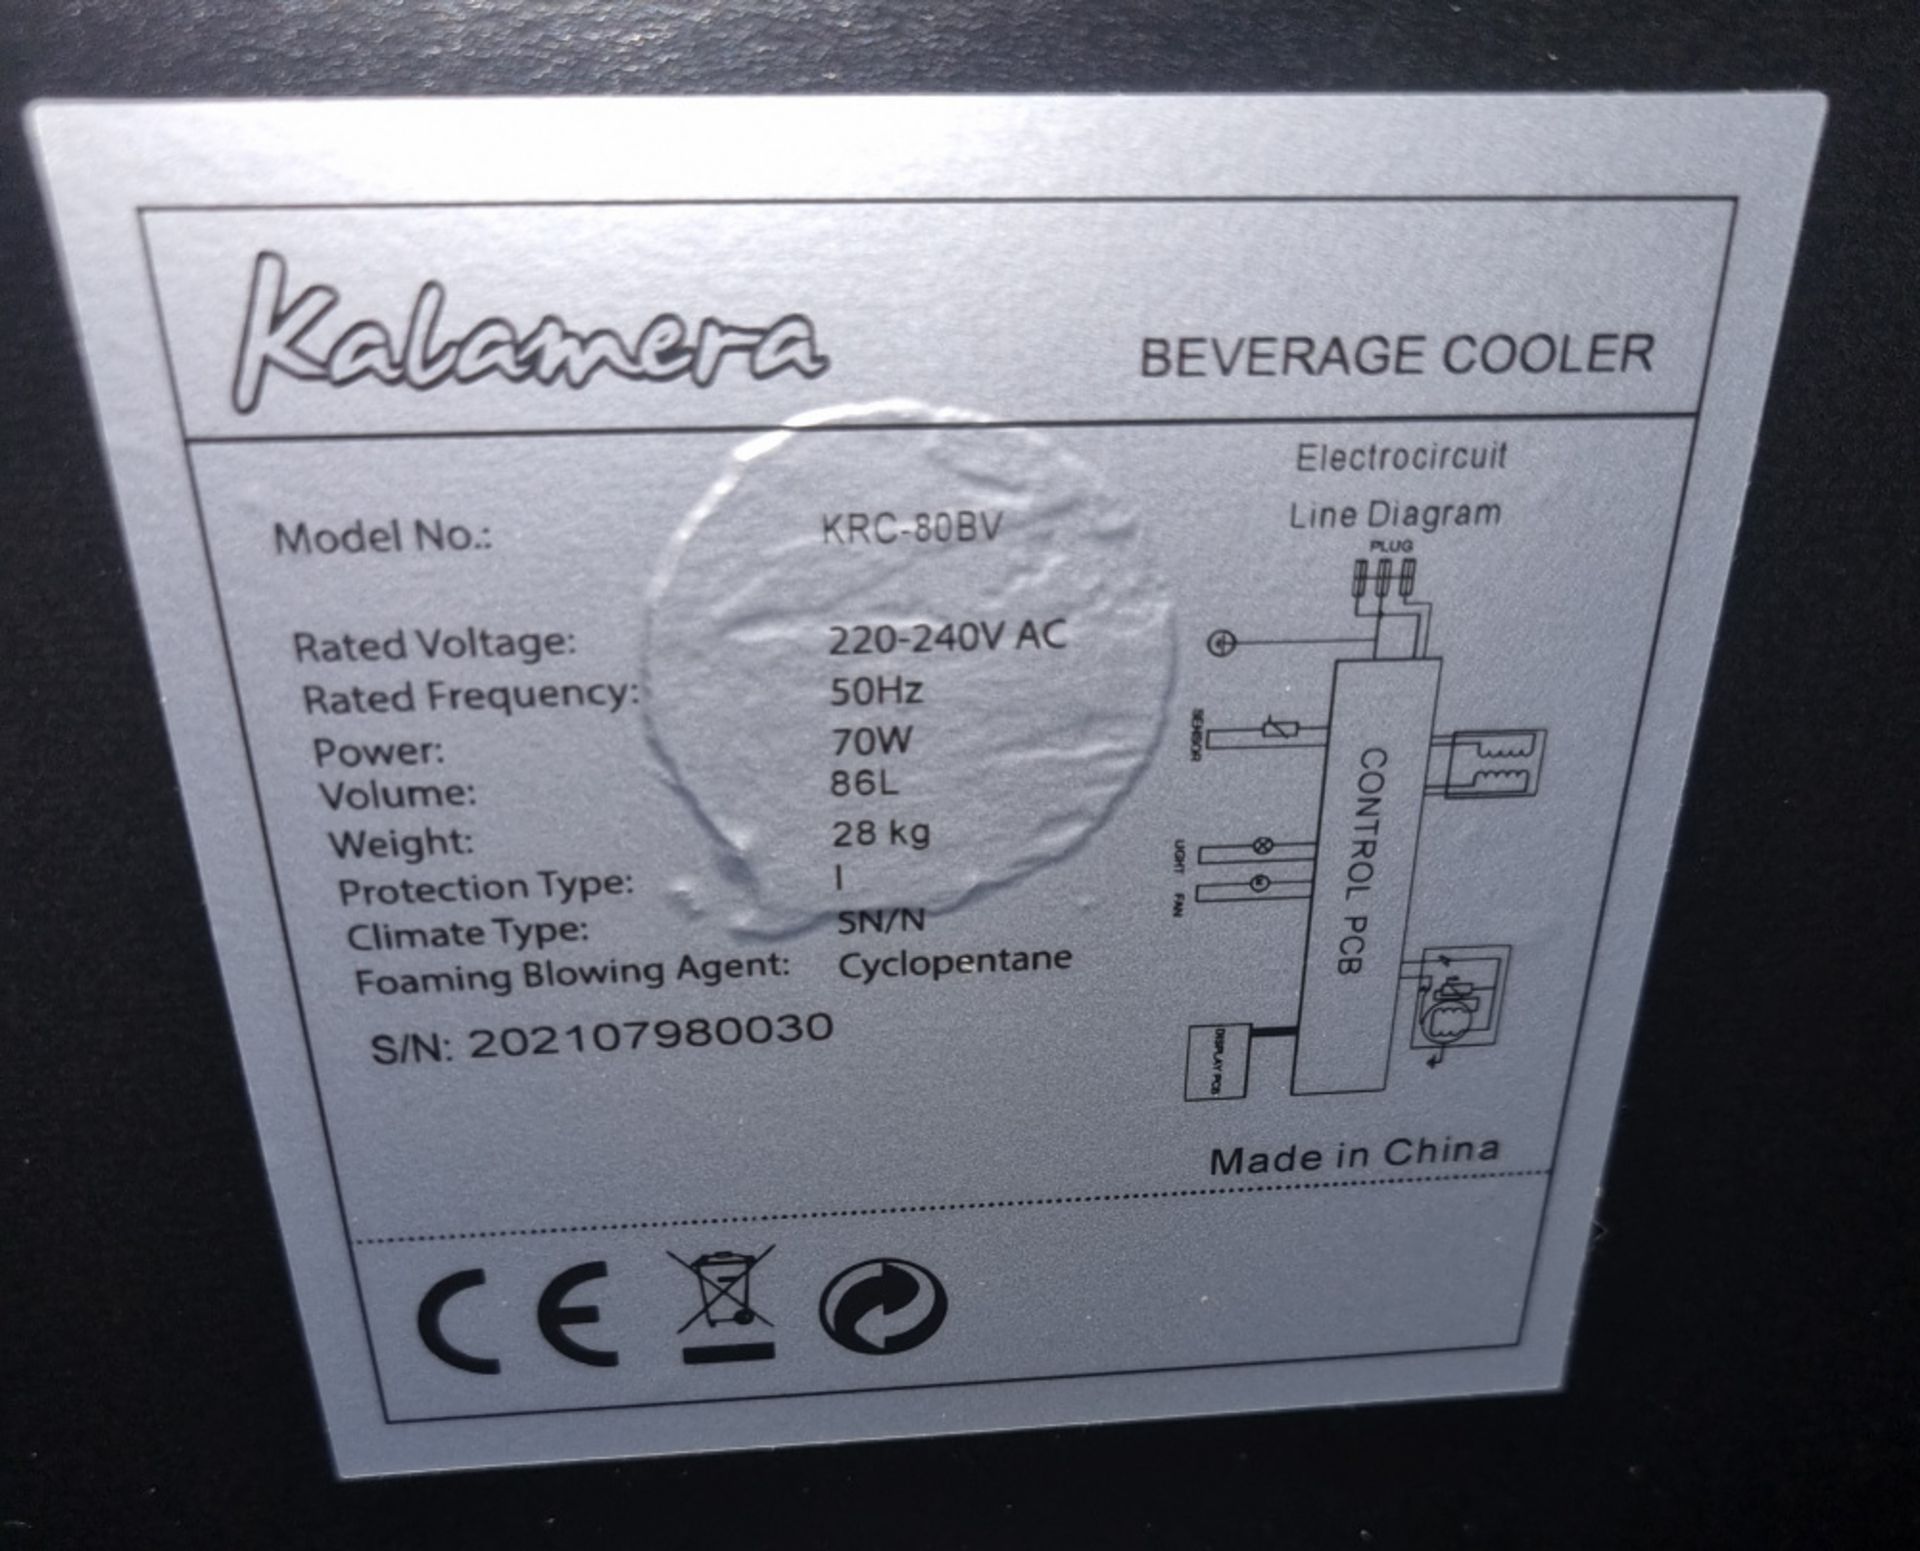 Kalamera KRC-80BV Drinks Cooler, 86L, 2 shelves, 44x47x85cm - Image 4 of 4